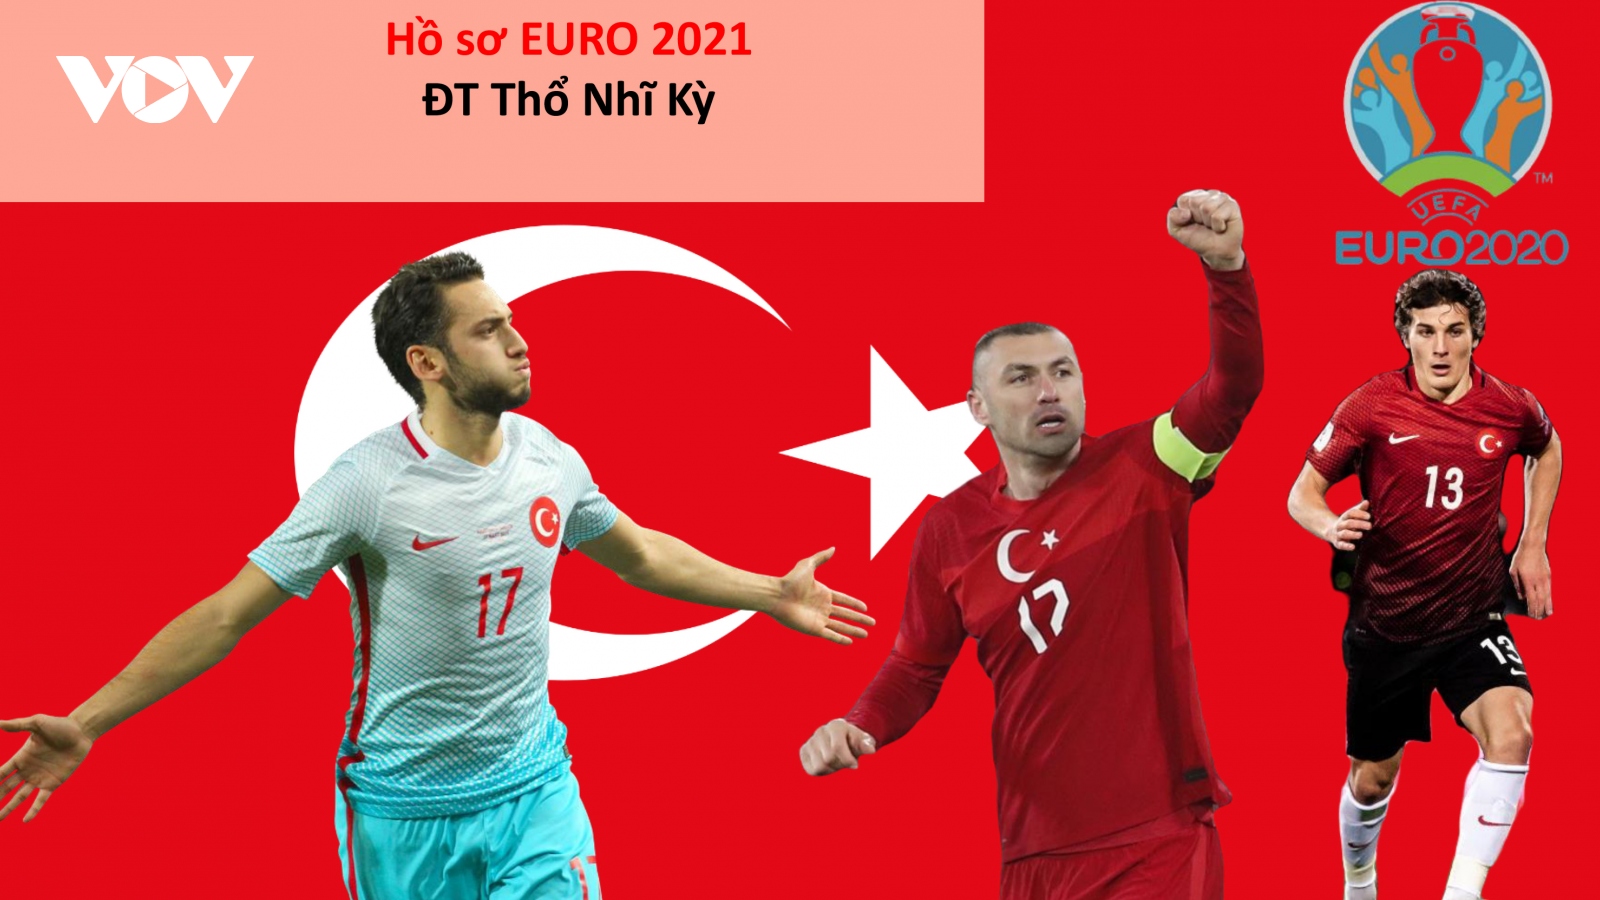 Hồ sơ các ĐT dự EURO 2021: Đội tuyển Thổ Nhĩ Kỳ